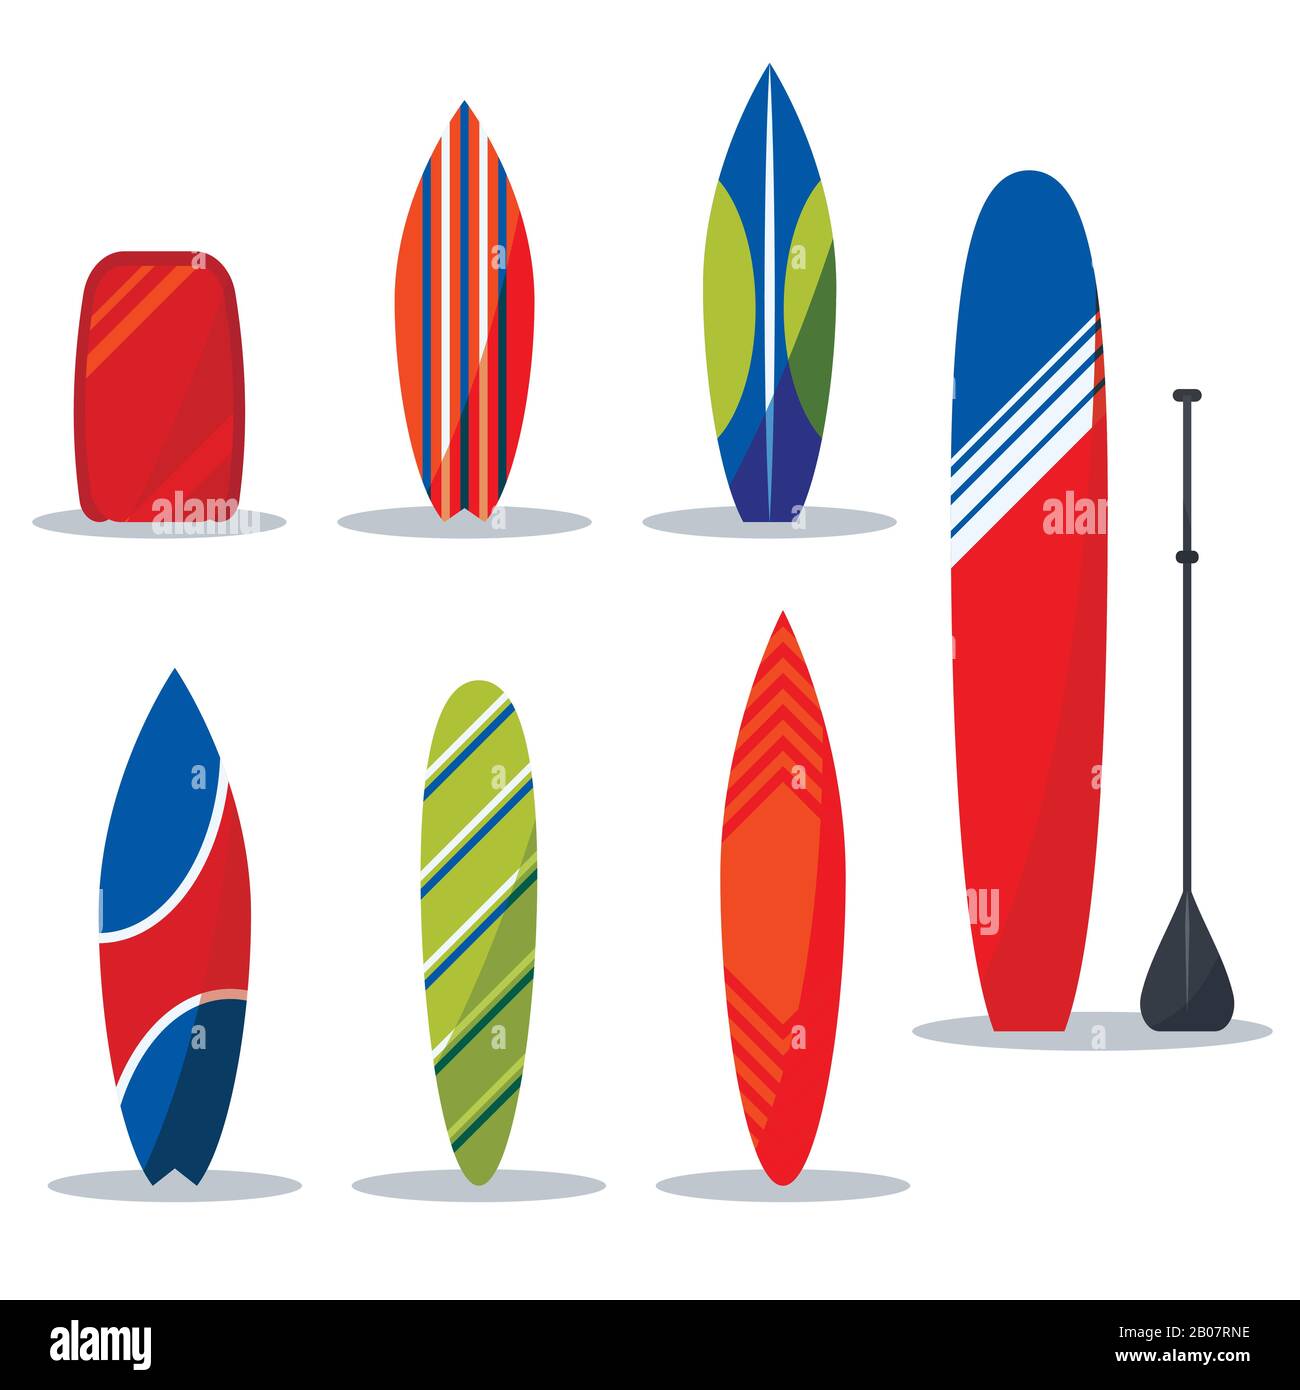 Définissez la collection de bureaux de surf pour l'illustration vectorielle de l'engrenage surfer. Illustration de Vecteur